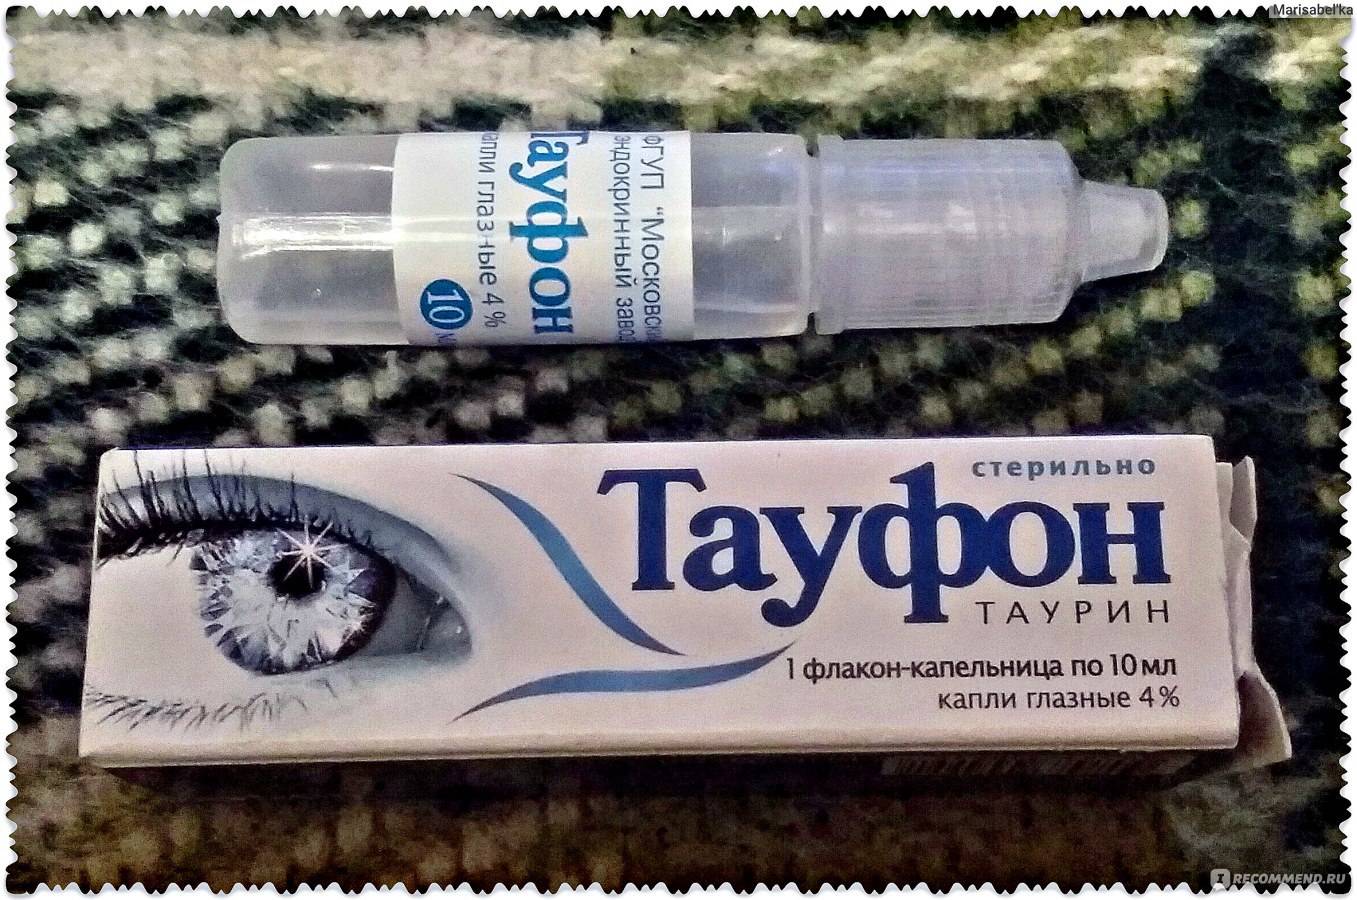 Витамины для глаз тауфон: особенности состава и применения